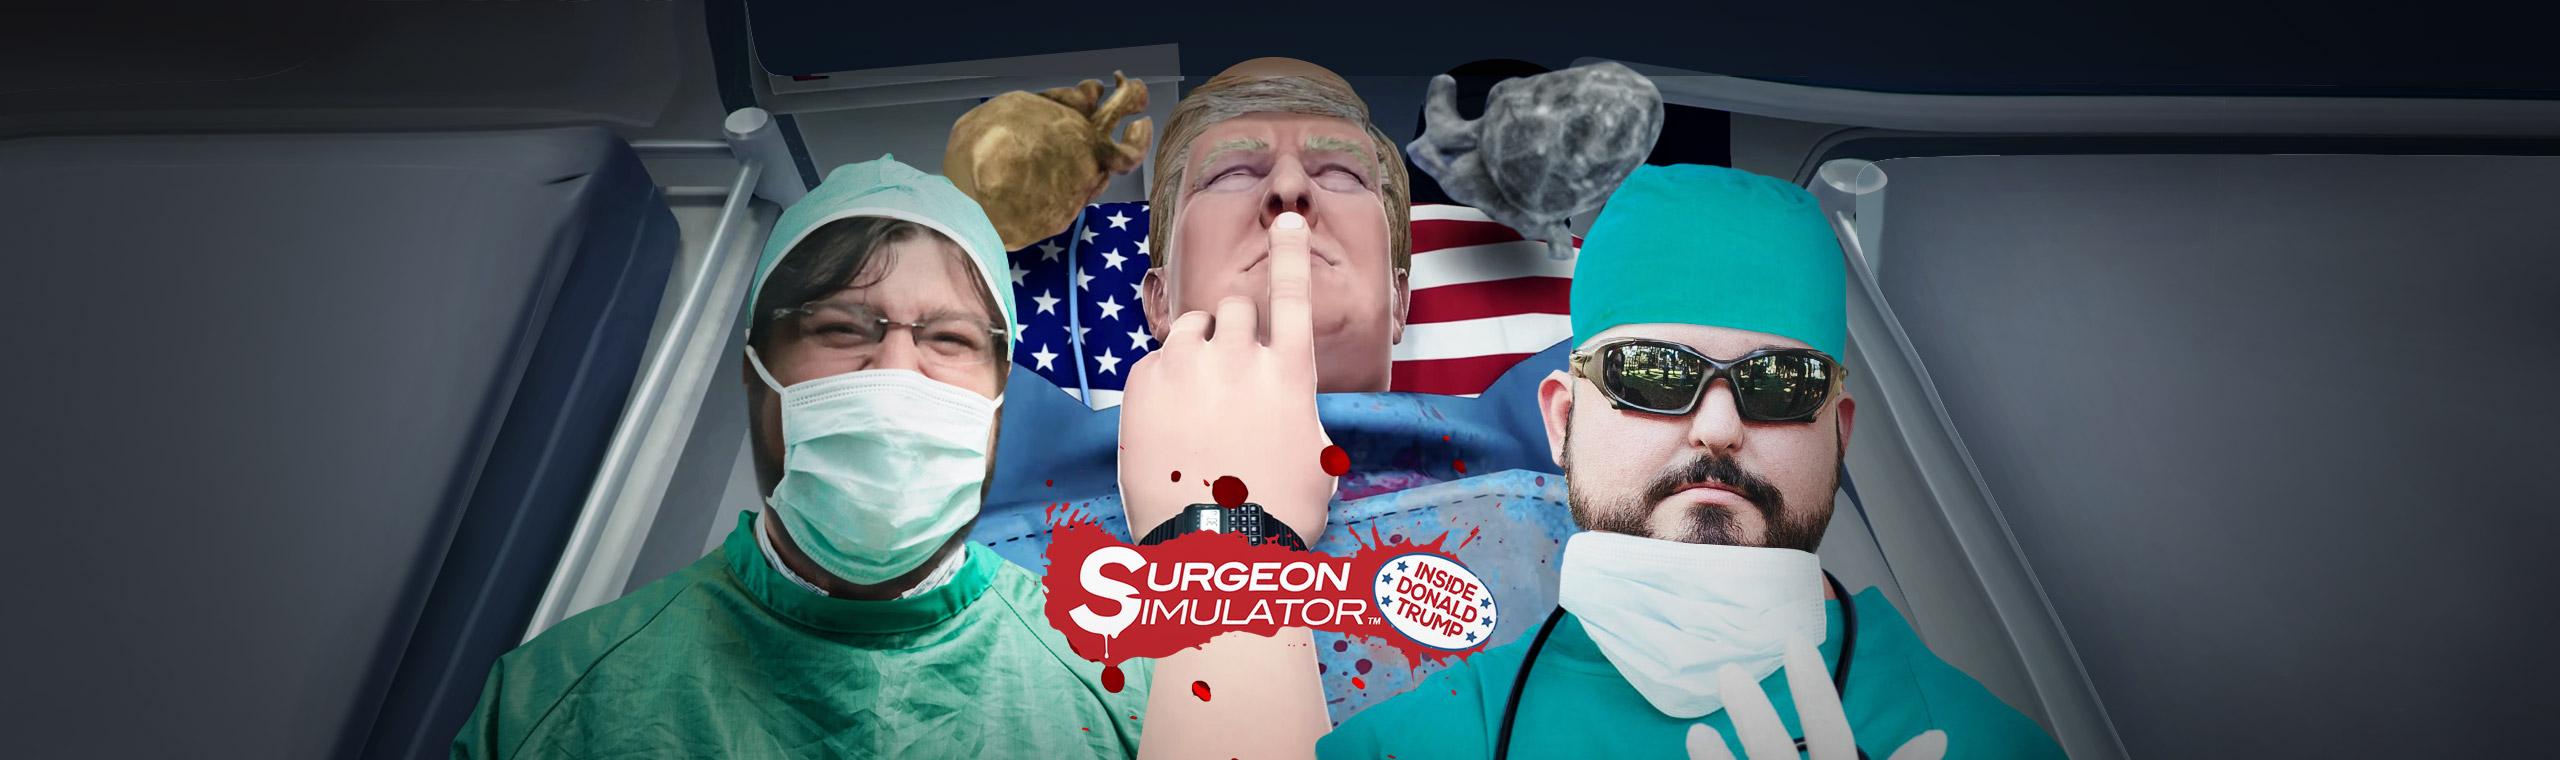 Surgeon Simulator - O final, você decide!